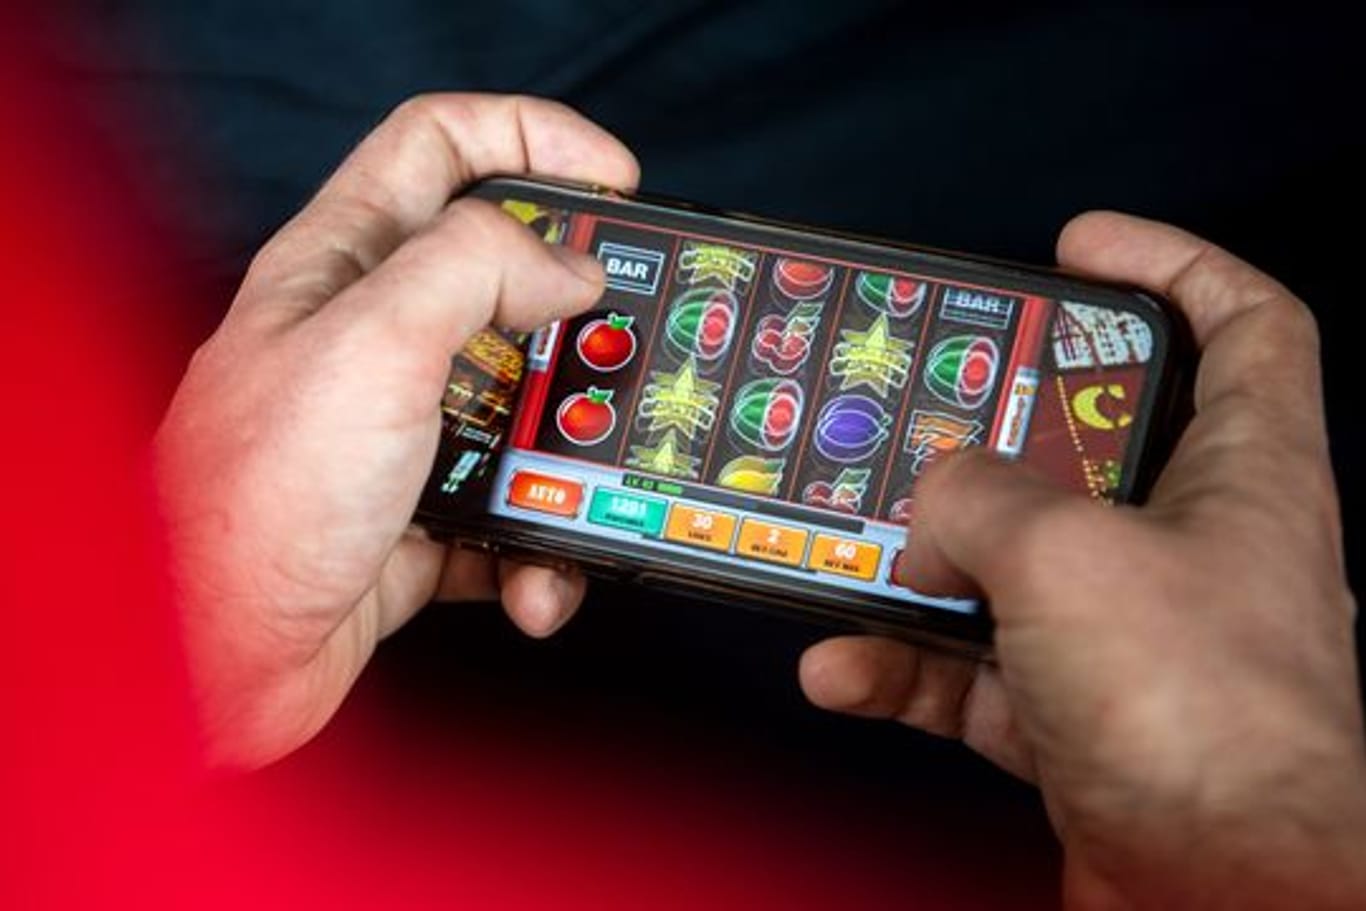 Auf einem Smartphone spielt ein Mann ein Online-Spiel.